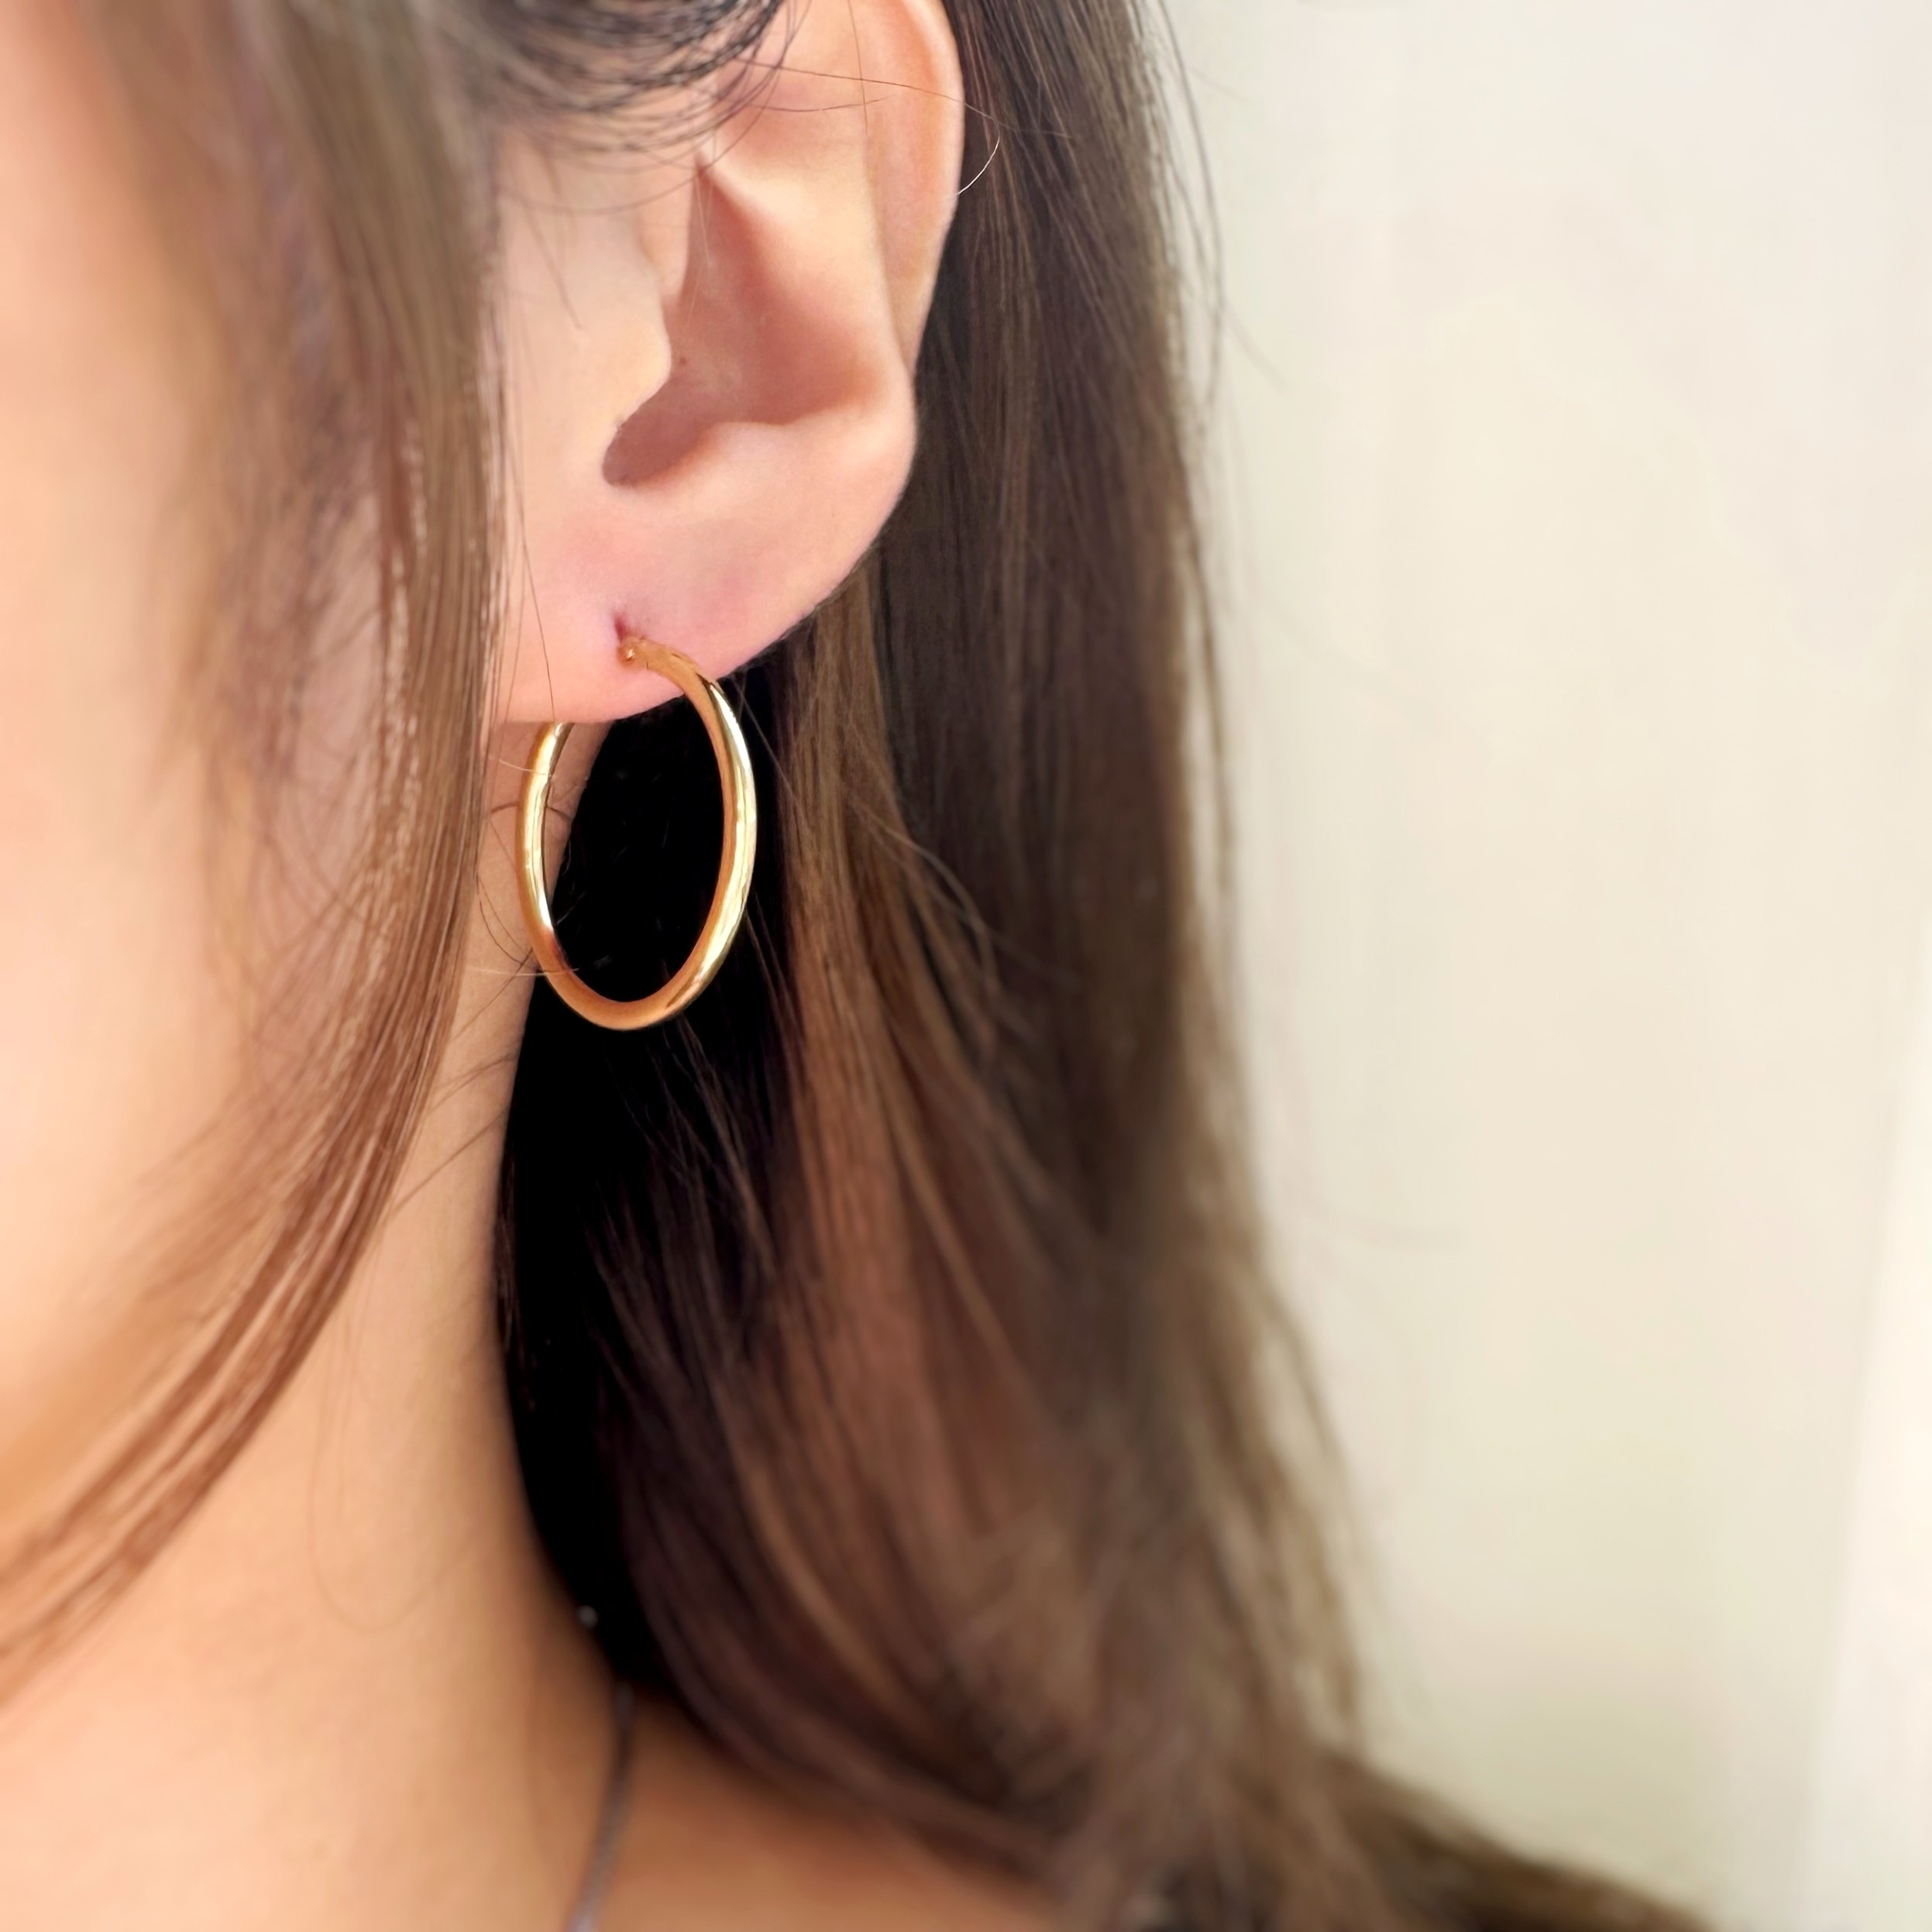 Evi' Hoop Earrings Gold - Stainless Steel - Notbranded